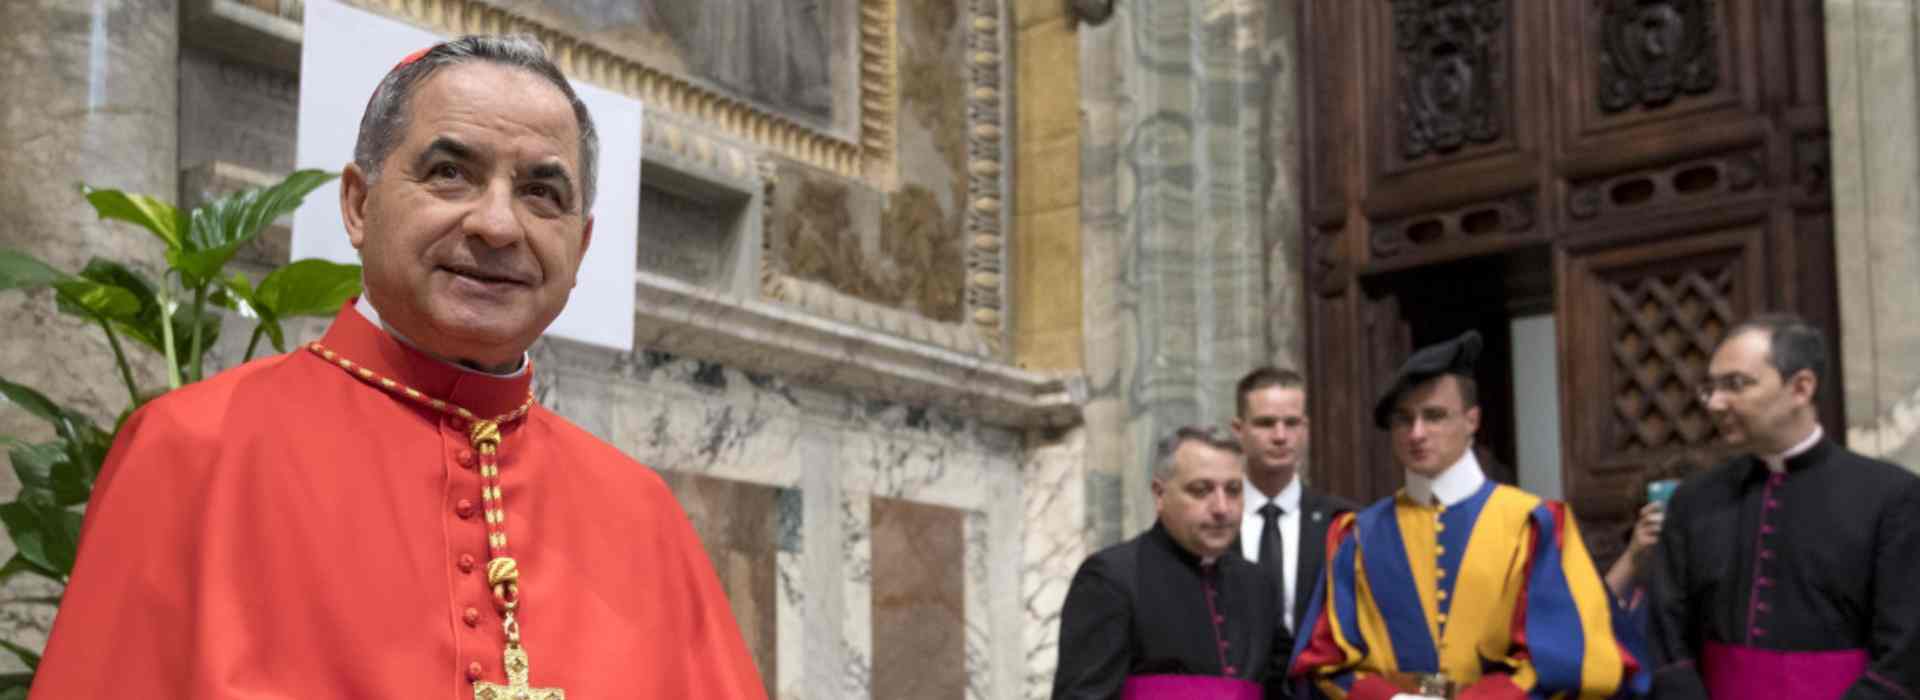 Il cardinale Becciu è al centro di un'inchiesta che lo vede protagonista di attività torbide effettuate durante la sua attività